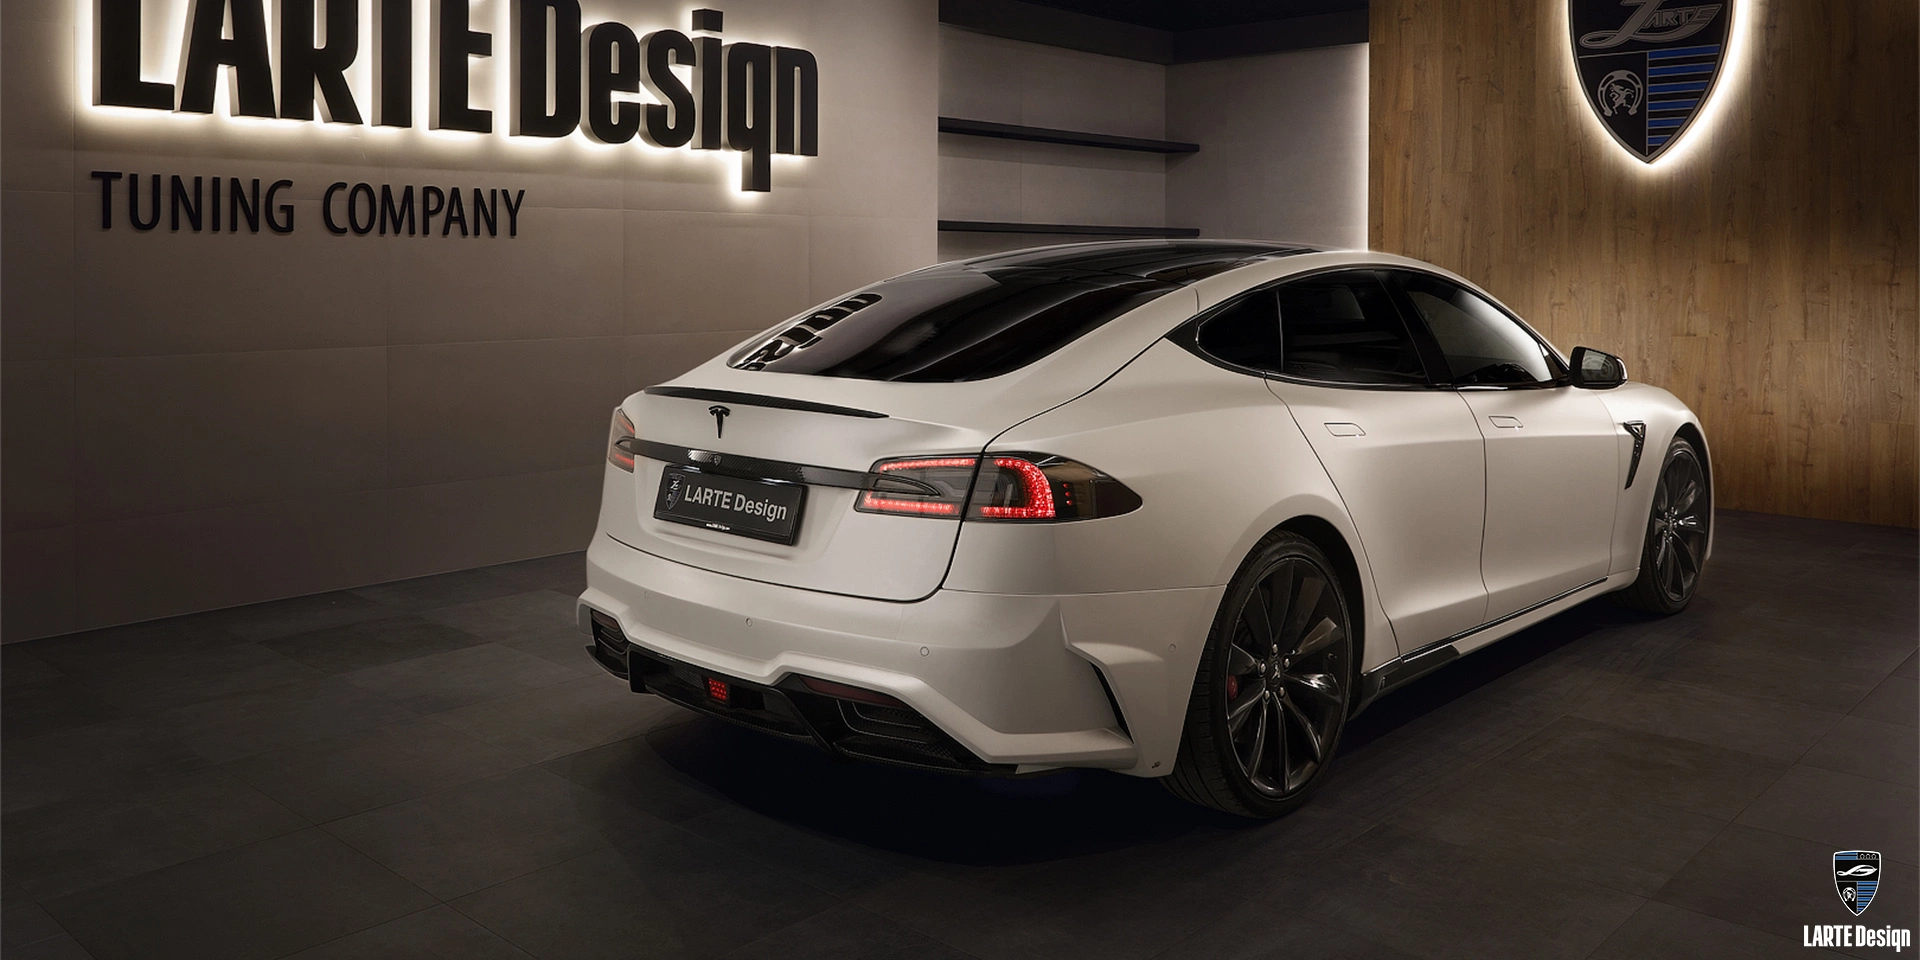 Kaufen Sie einen Carbonfaser-Heckschürzen-Diffusor für den Tesla Model S 85D Electro AT in Perlweiß 2020